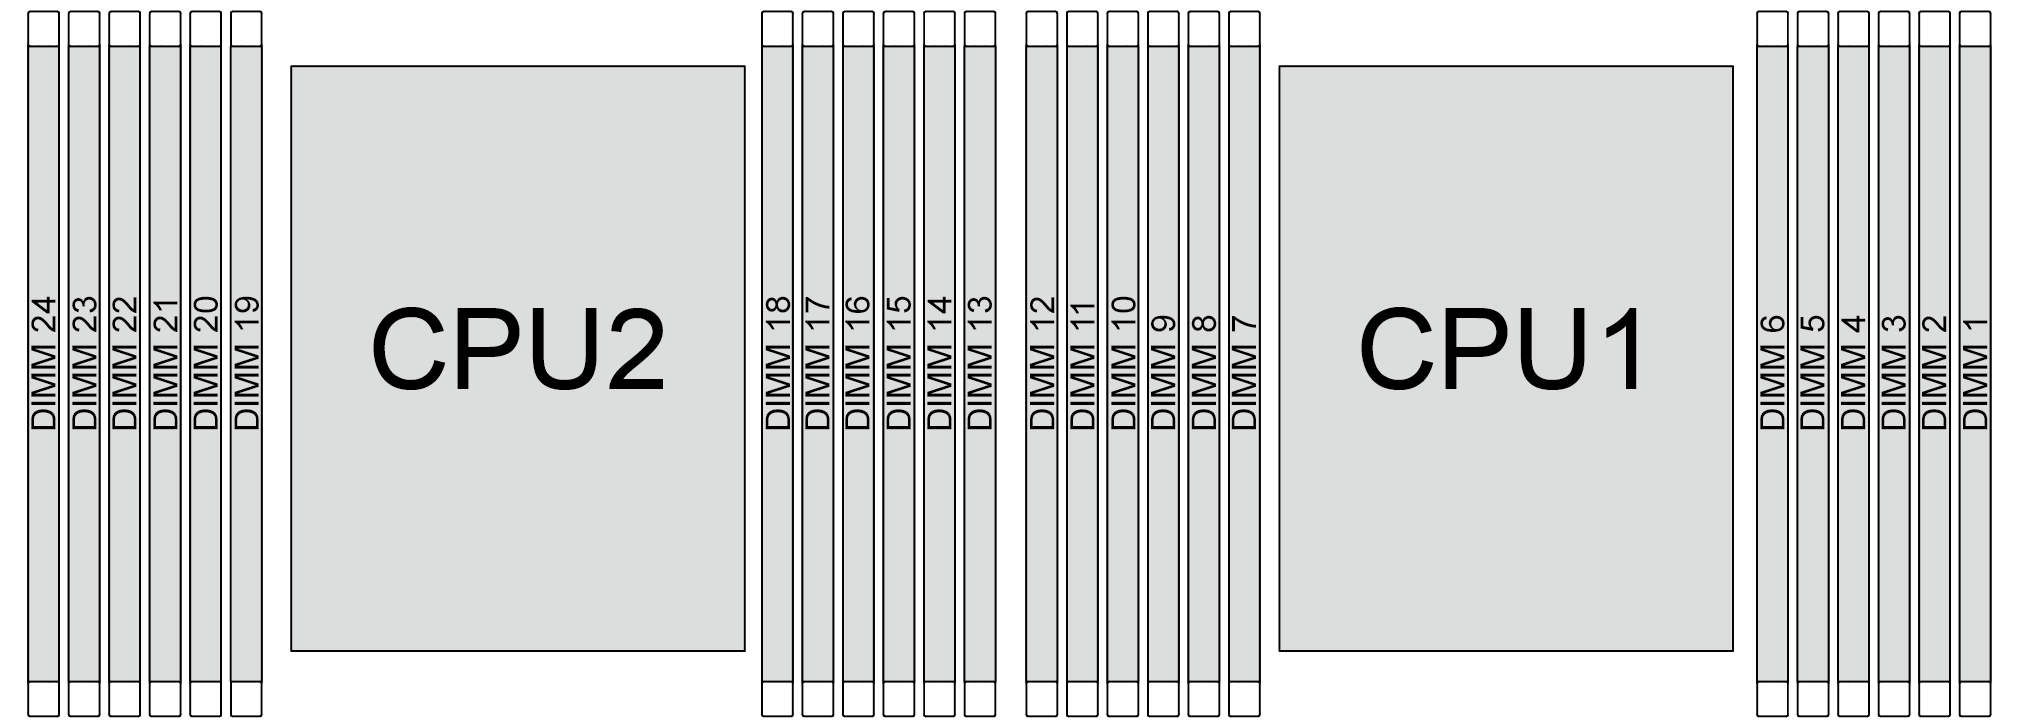 Memory module and processor location